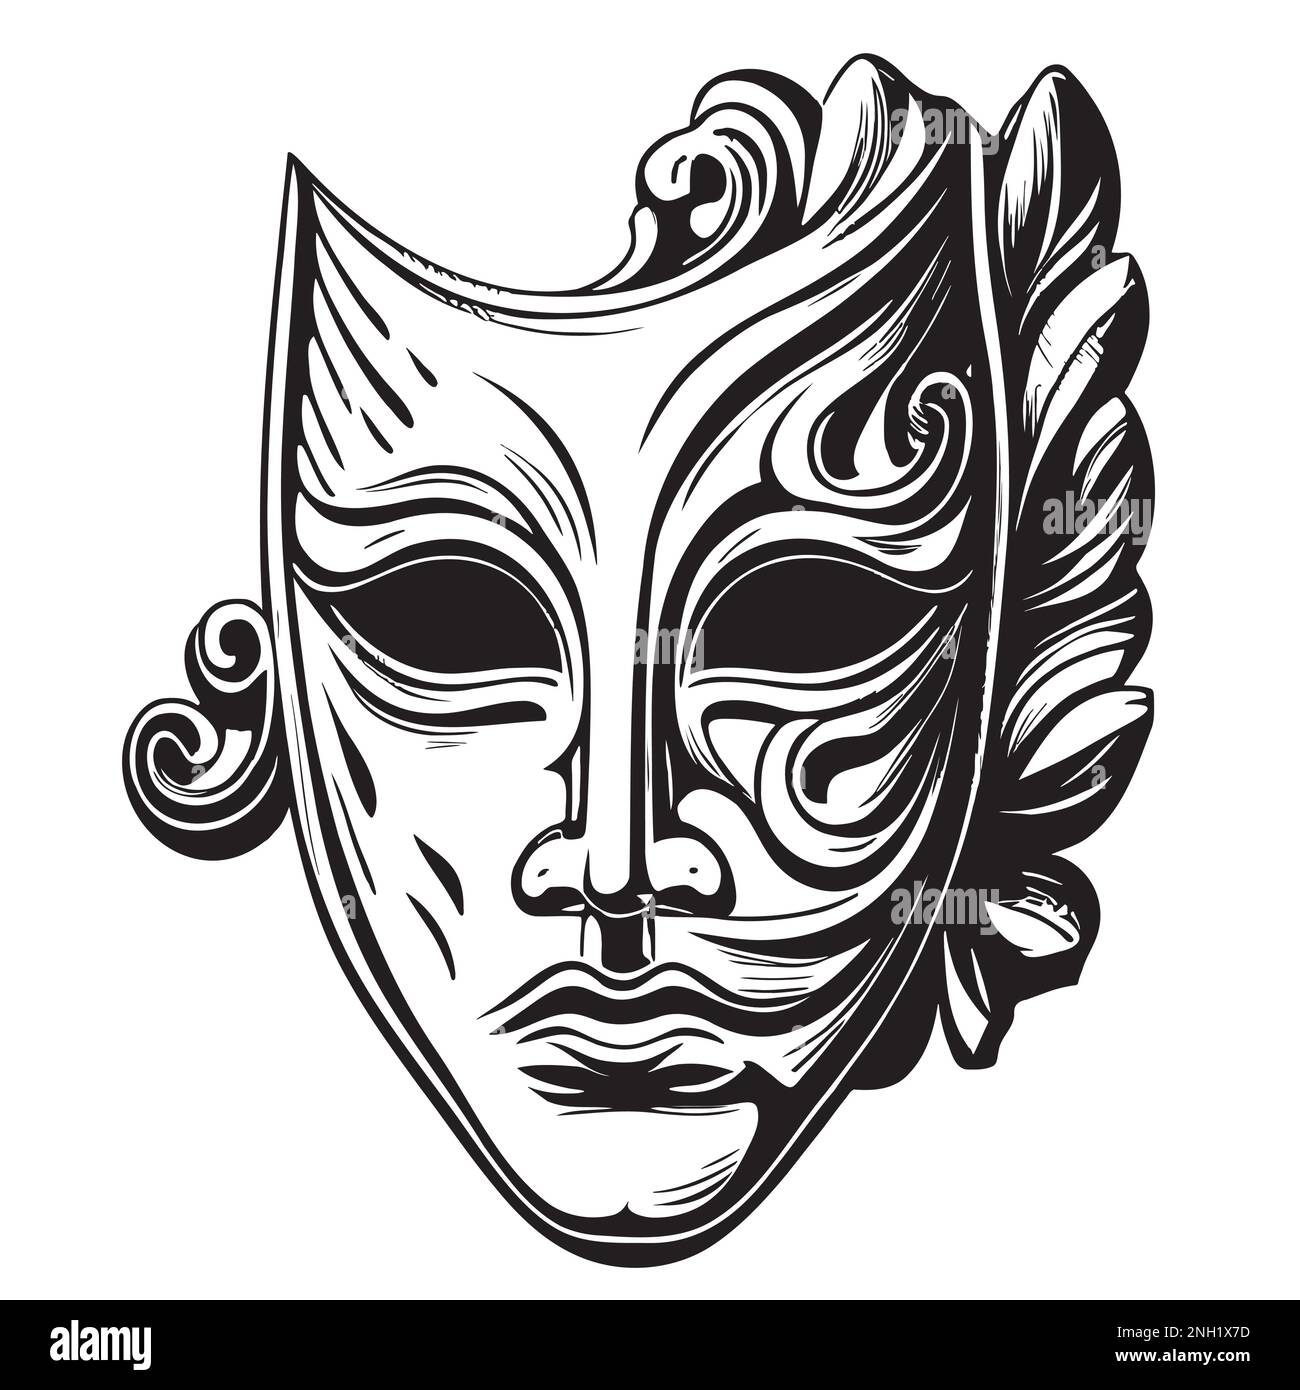 Masque de latricalmask dessin de style gravure dessiné à la main illustration vectorielle Illustration de Vecteur